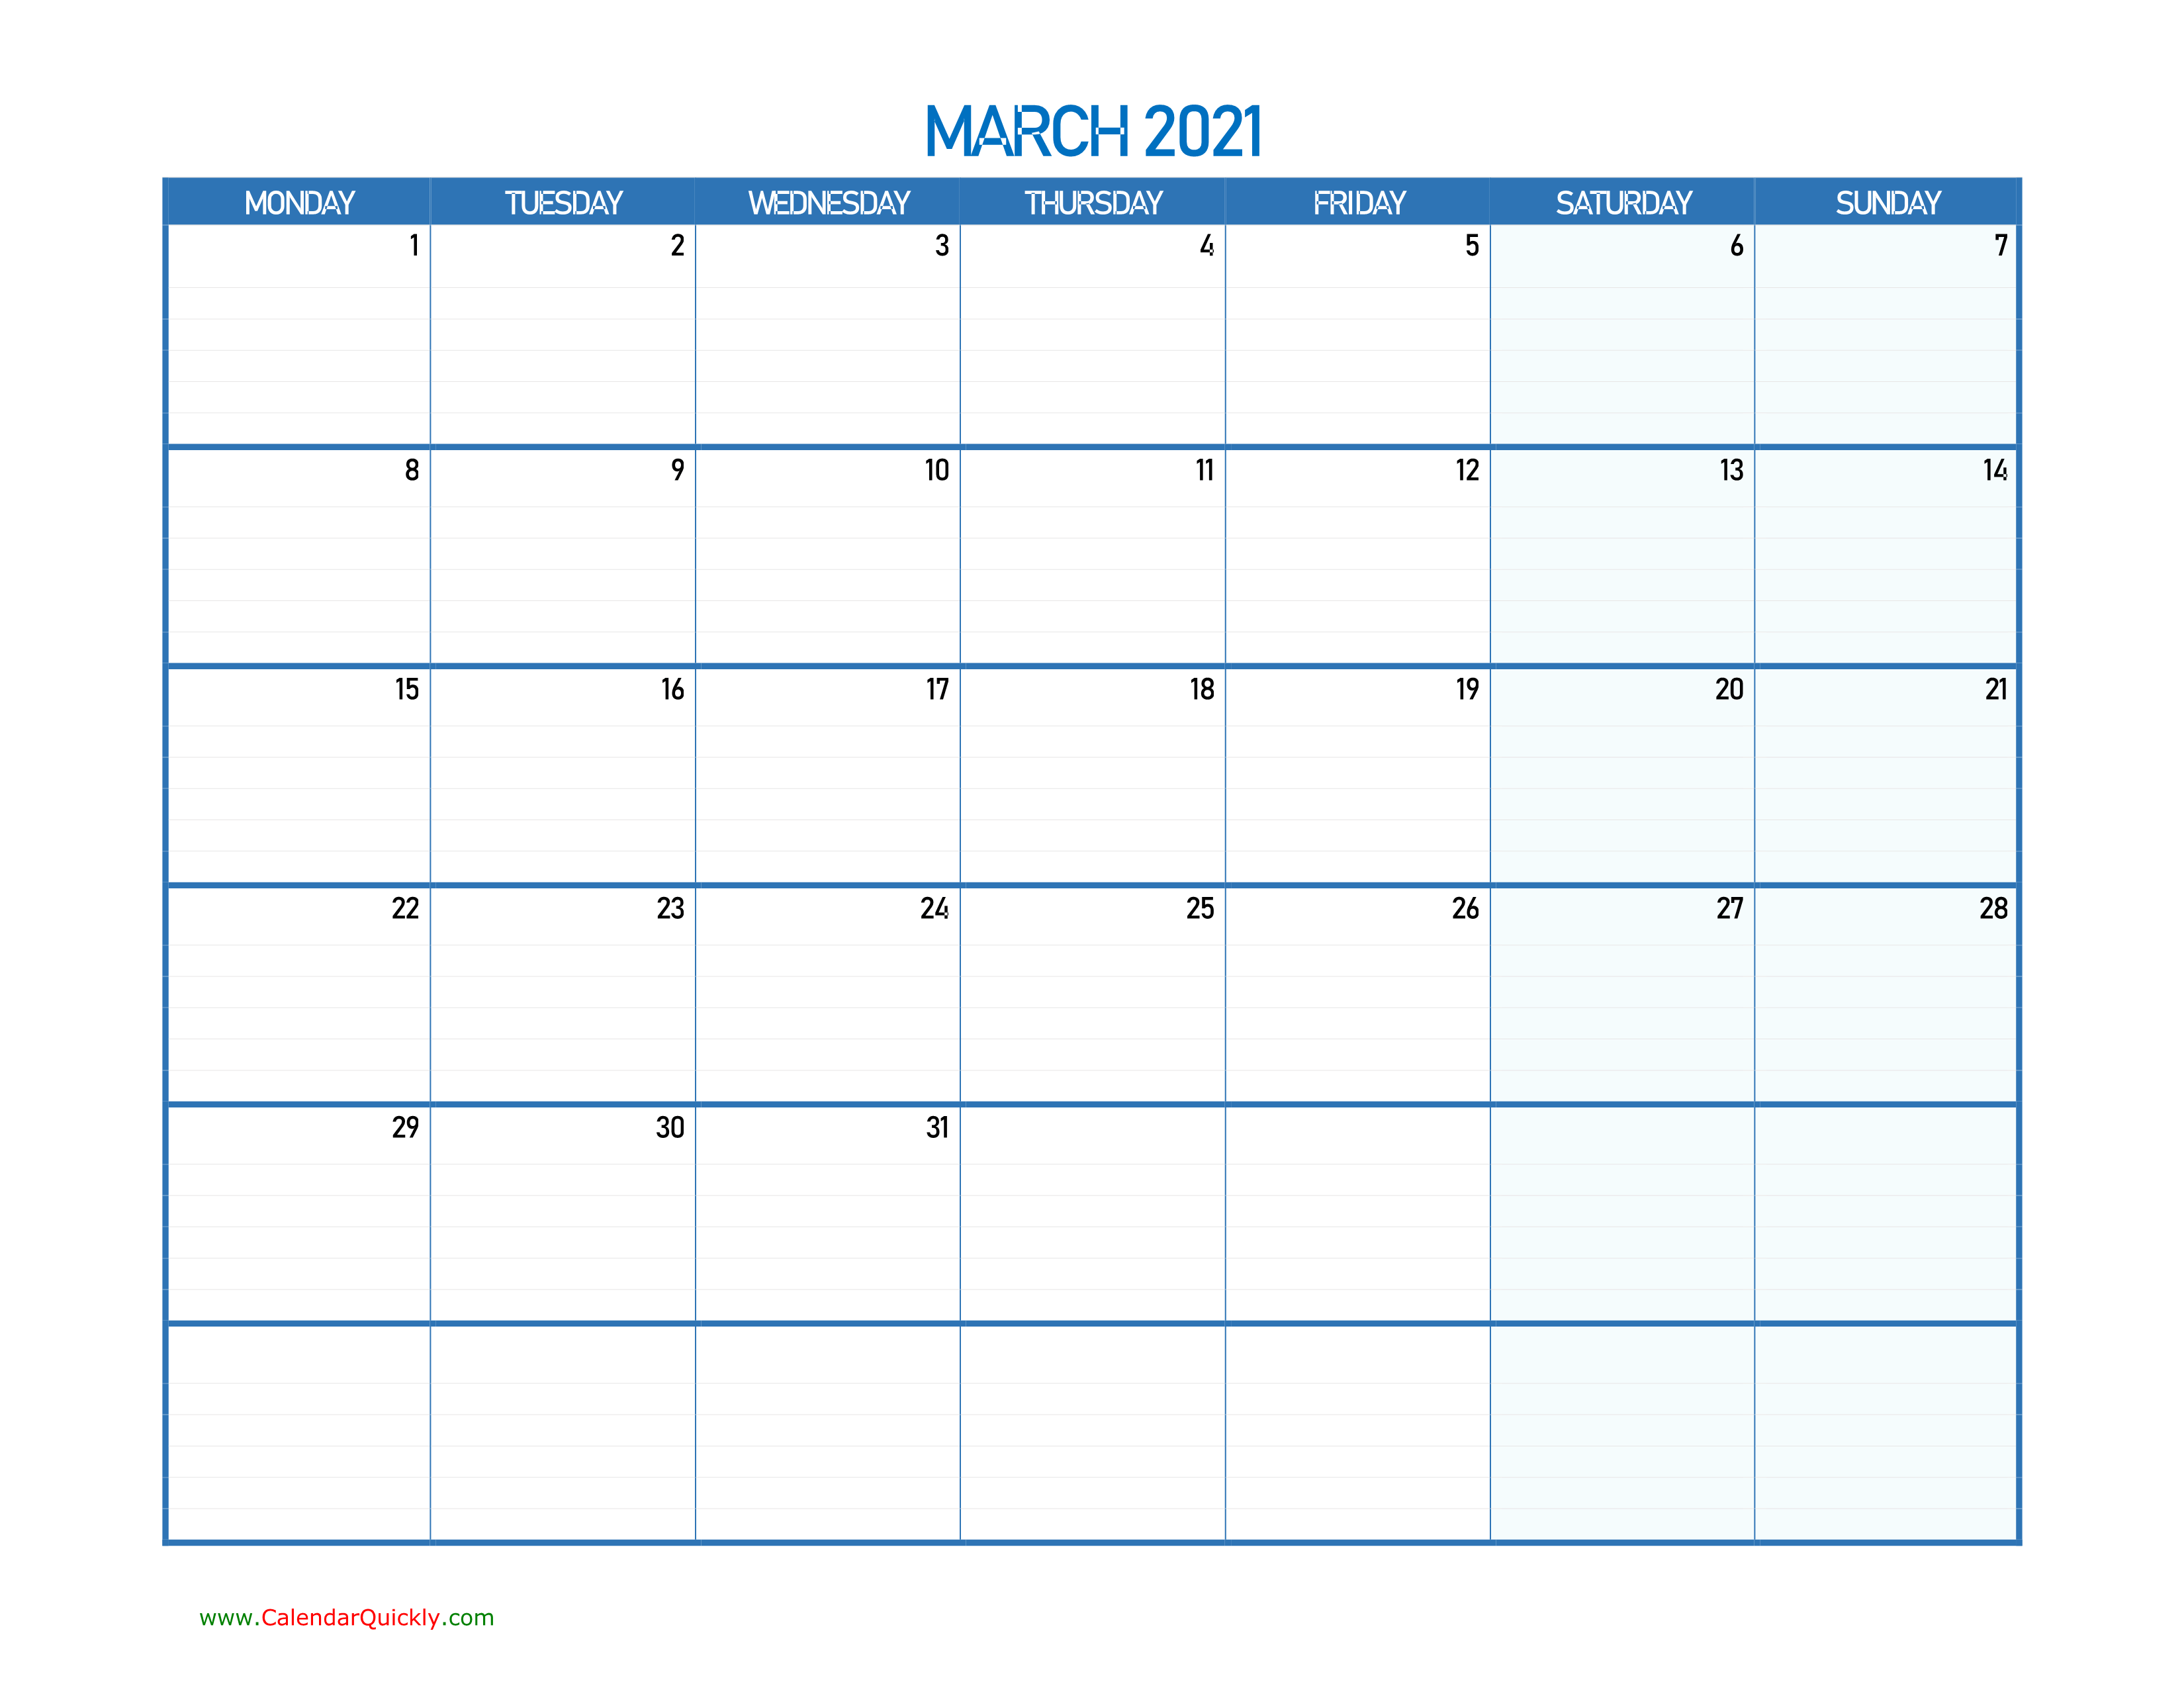 March Monday 2021 Blank Calendar Calendar Quickly